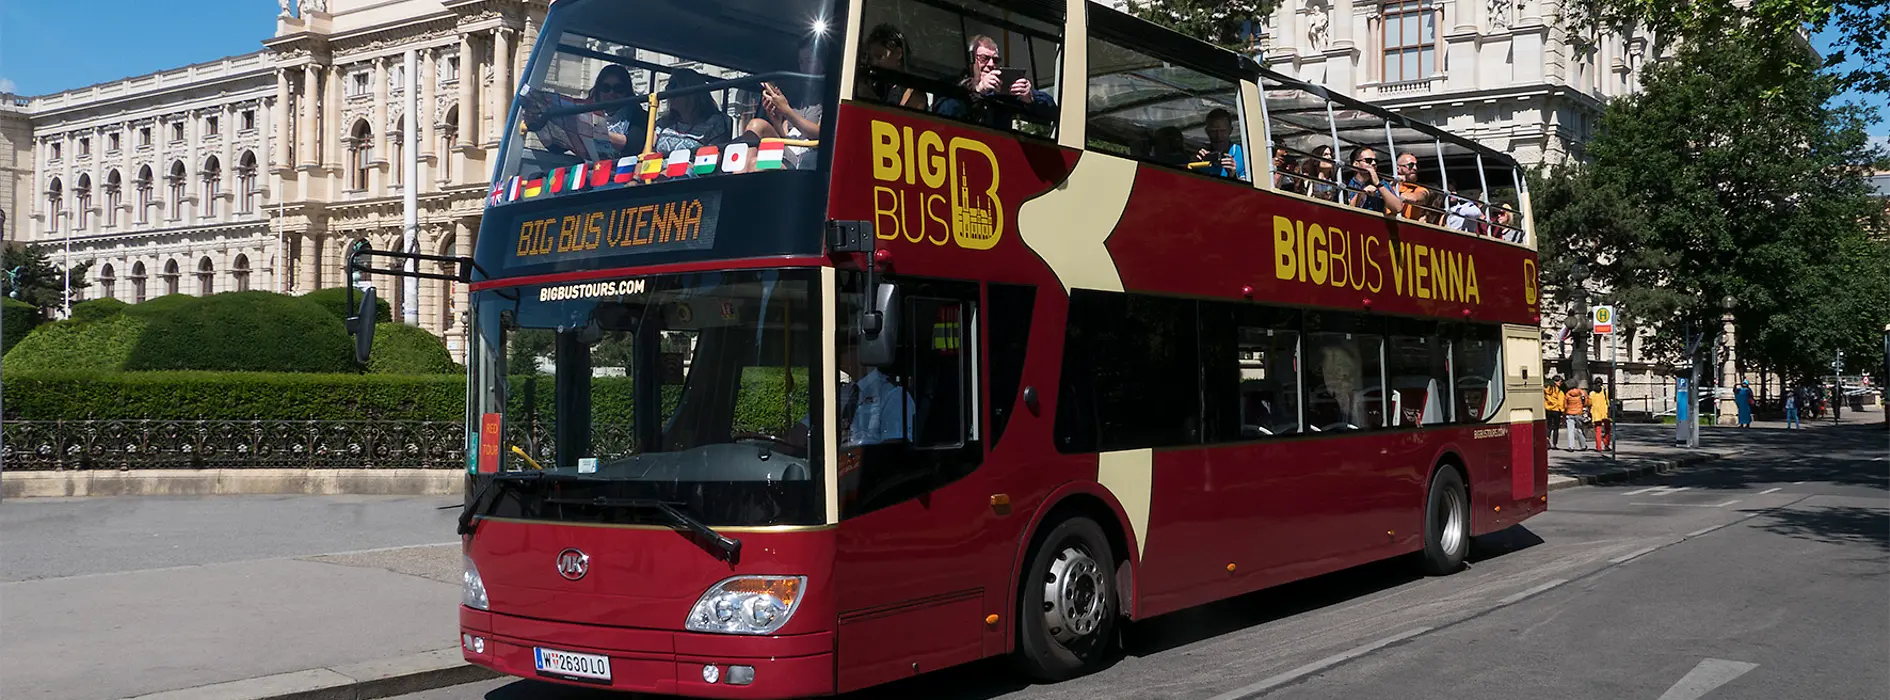 Big Bus Vienna - autobús rojo de dos pisos